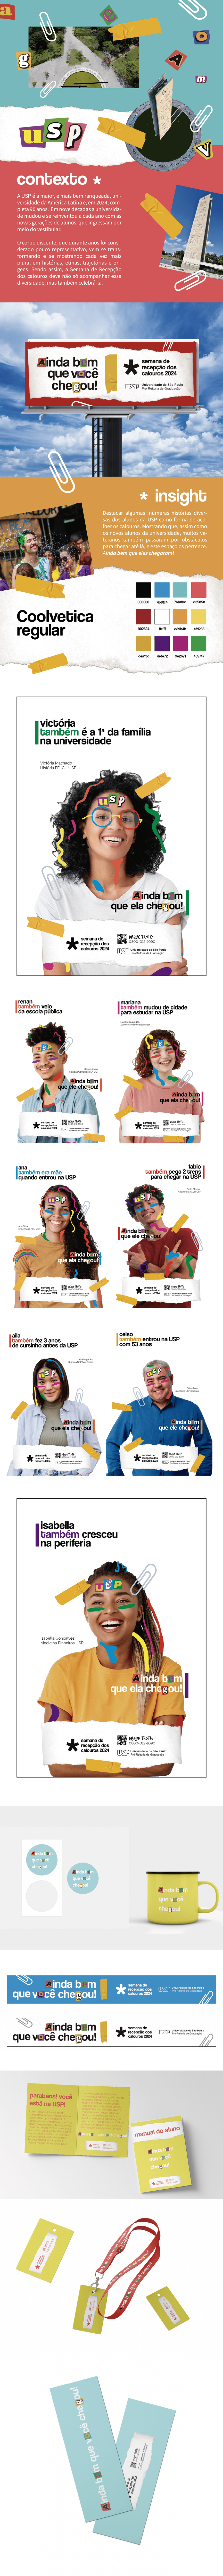 design usp calouros universidade diversidade design gráfico campanha campanha publicitária semana de rece